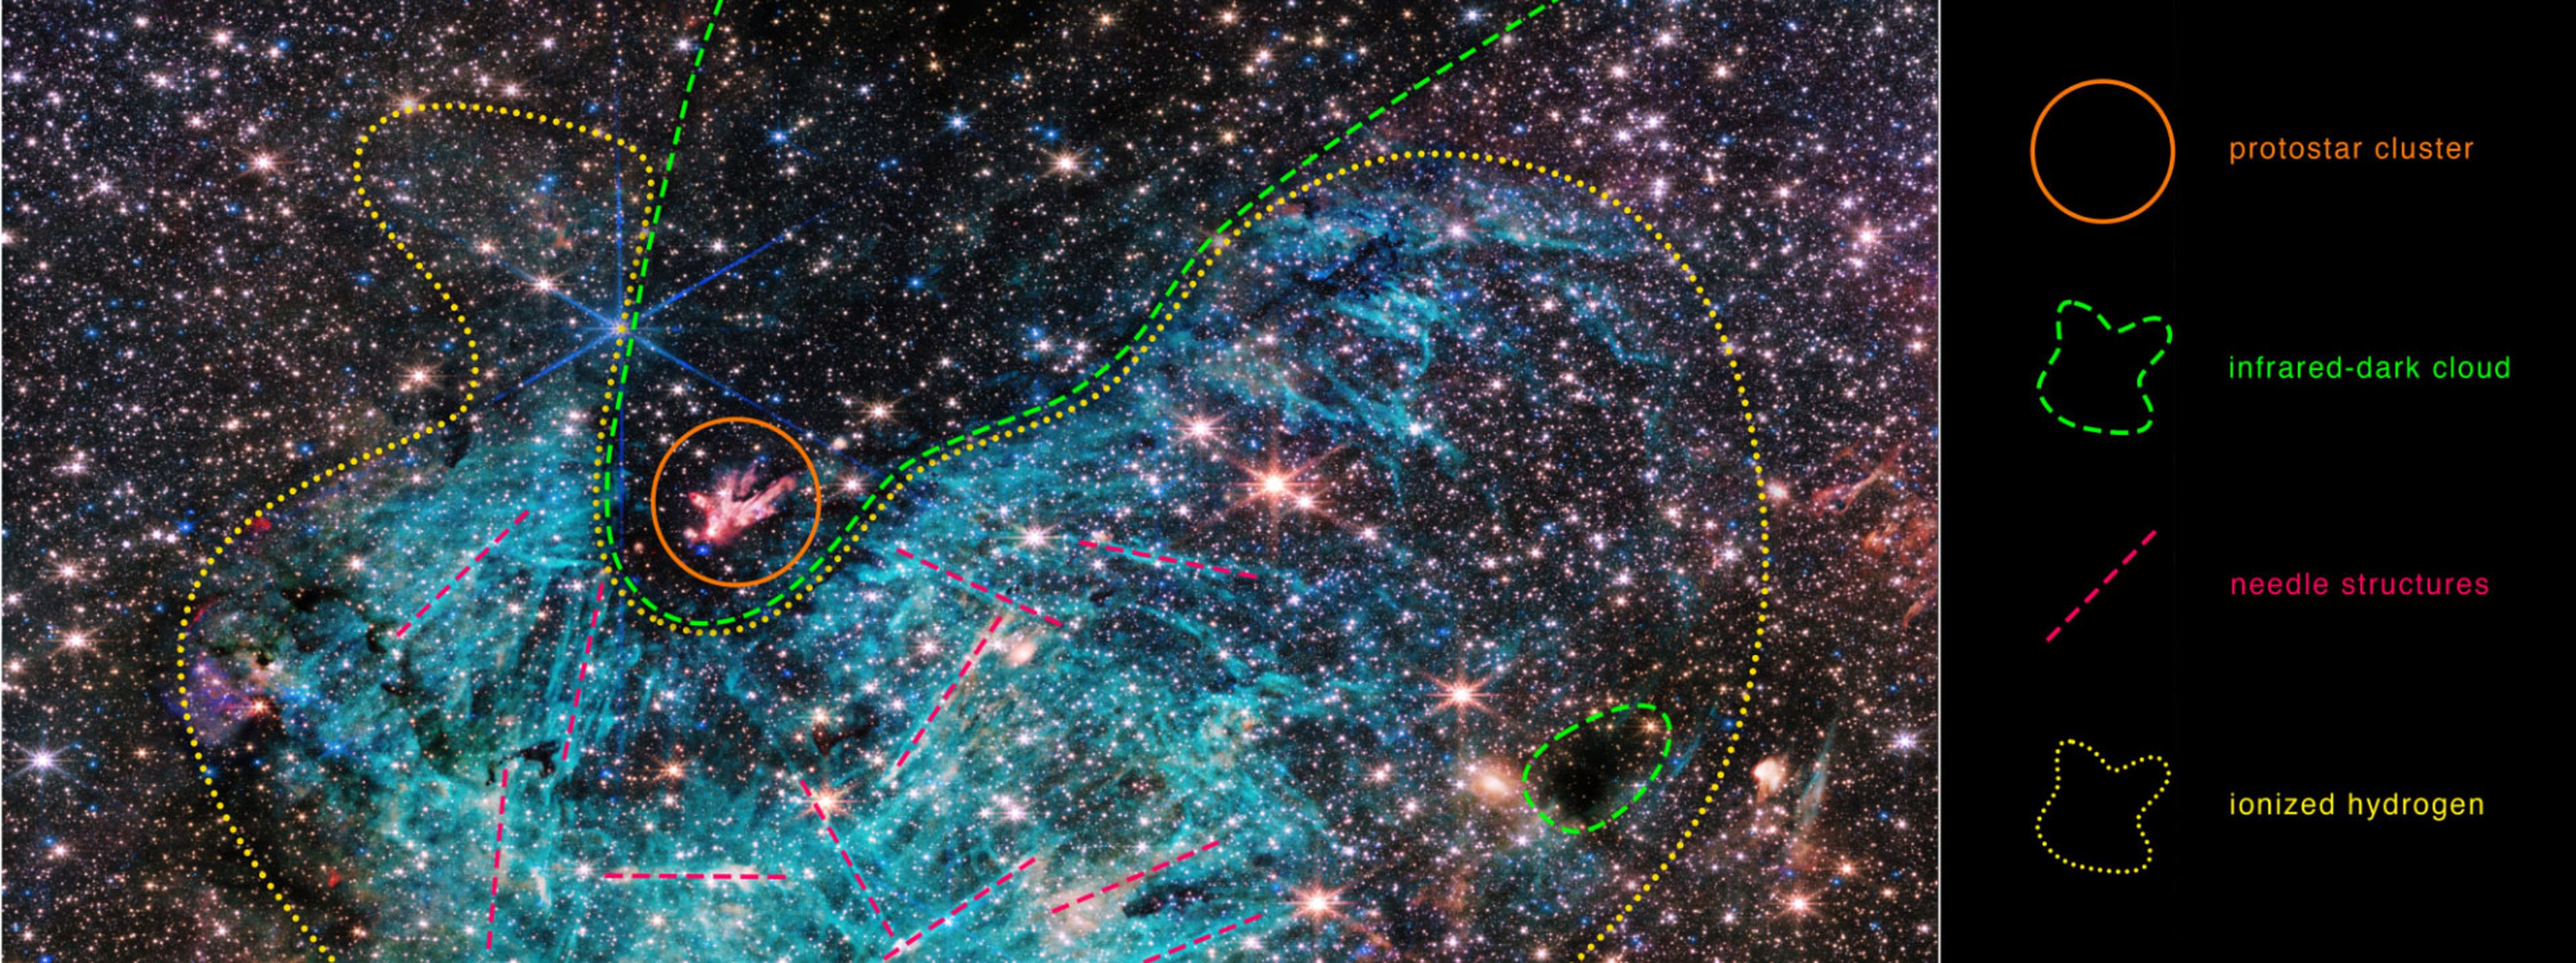 James Webb detecta “estructuras inexplicables en el centro de nuestra galaxia que desconciertan a los científicos